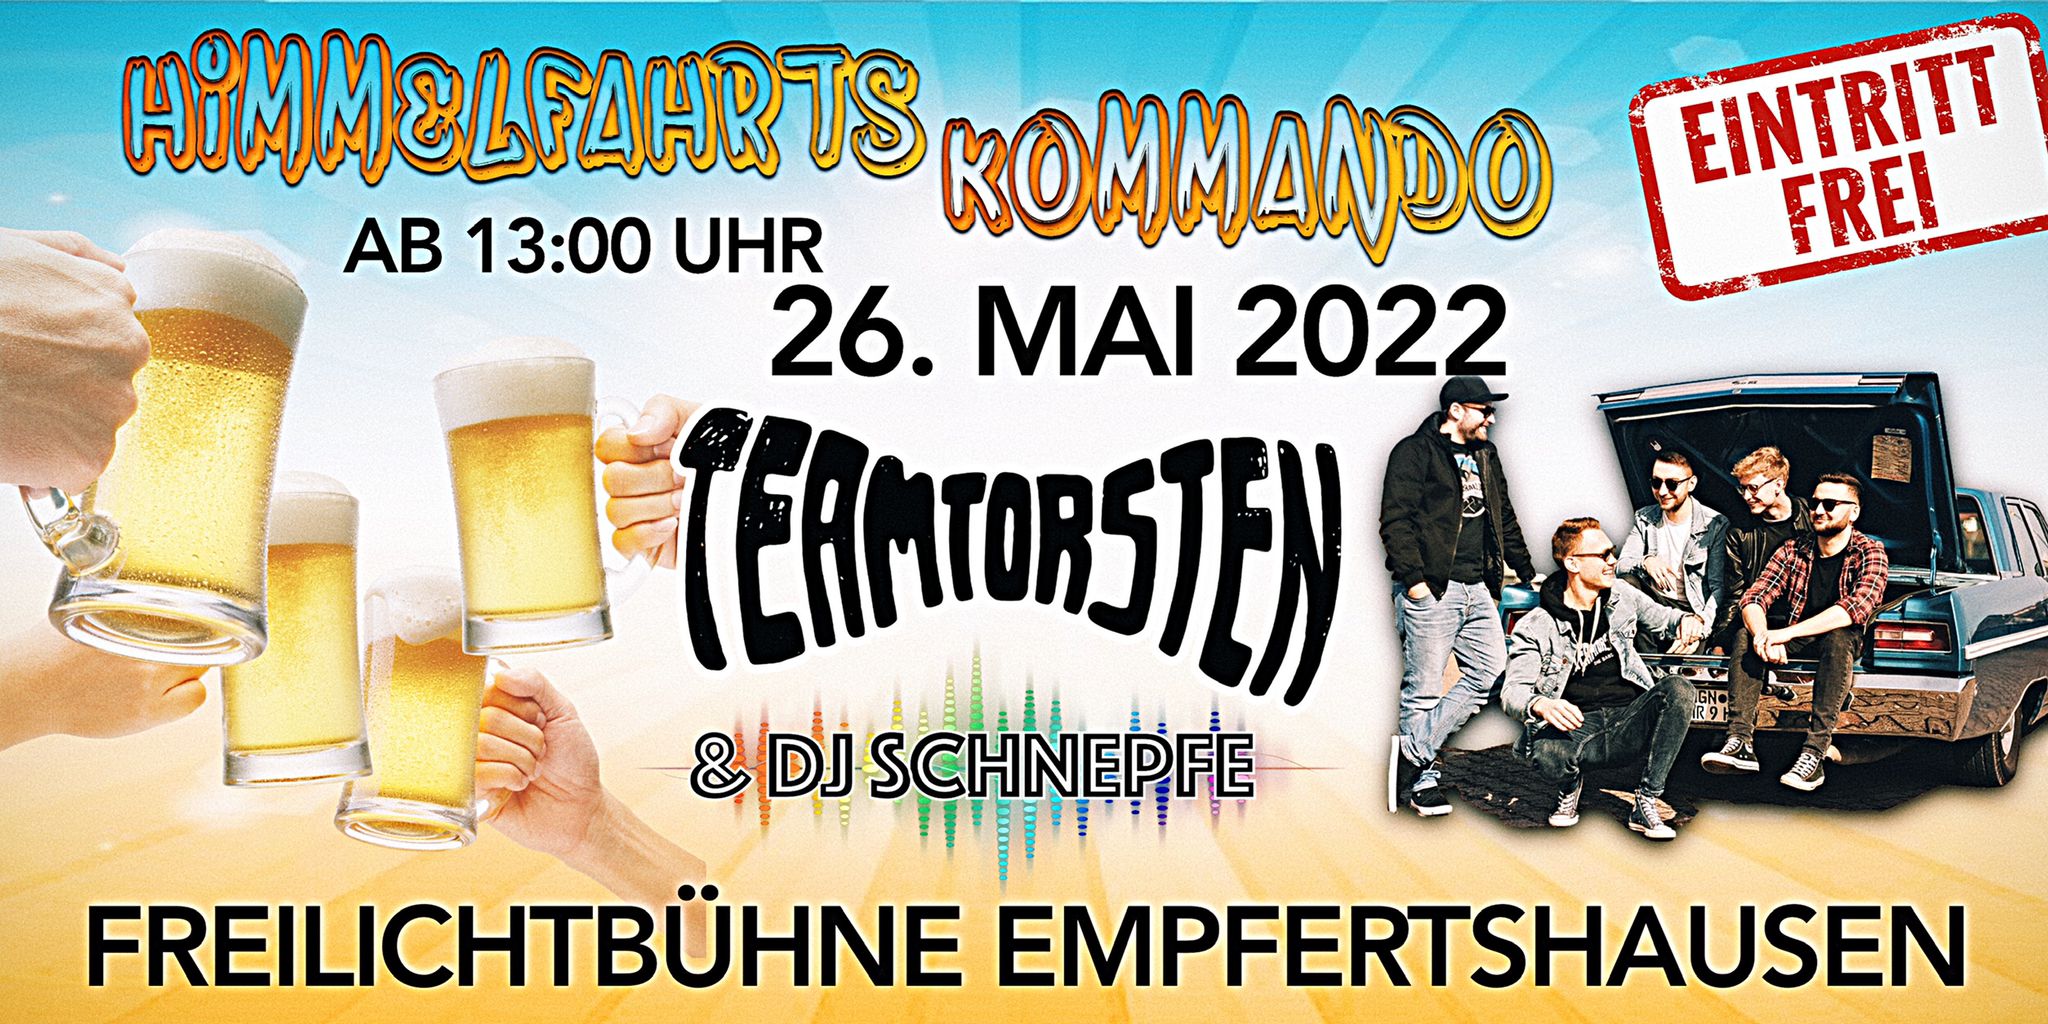 2022-05-24_Himmelfahrtskommando_Empfertshausen_Team Torsten_DJ Schnepfe (1)